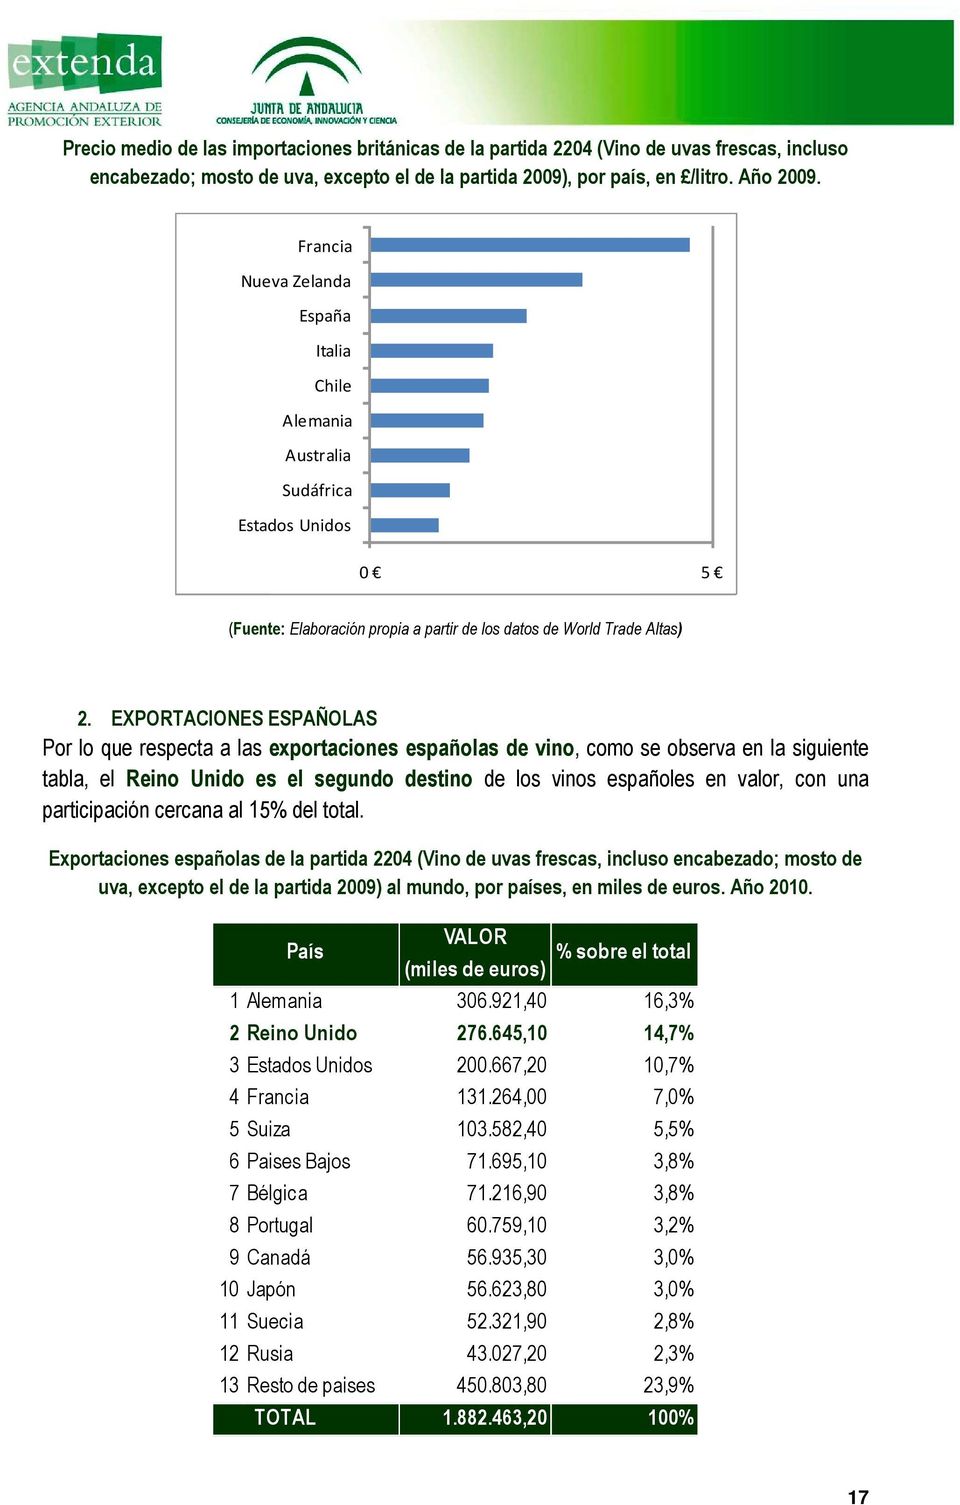 EXPORTACIONES ESPAÑOLAS Por lo que respecta a las exportaciones españolas de vino, como se observa en la siguiente tabla, el Reino Unido es el segundo destino de los vinos españoles en valor, con una